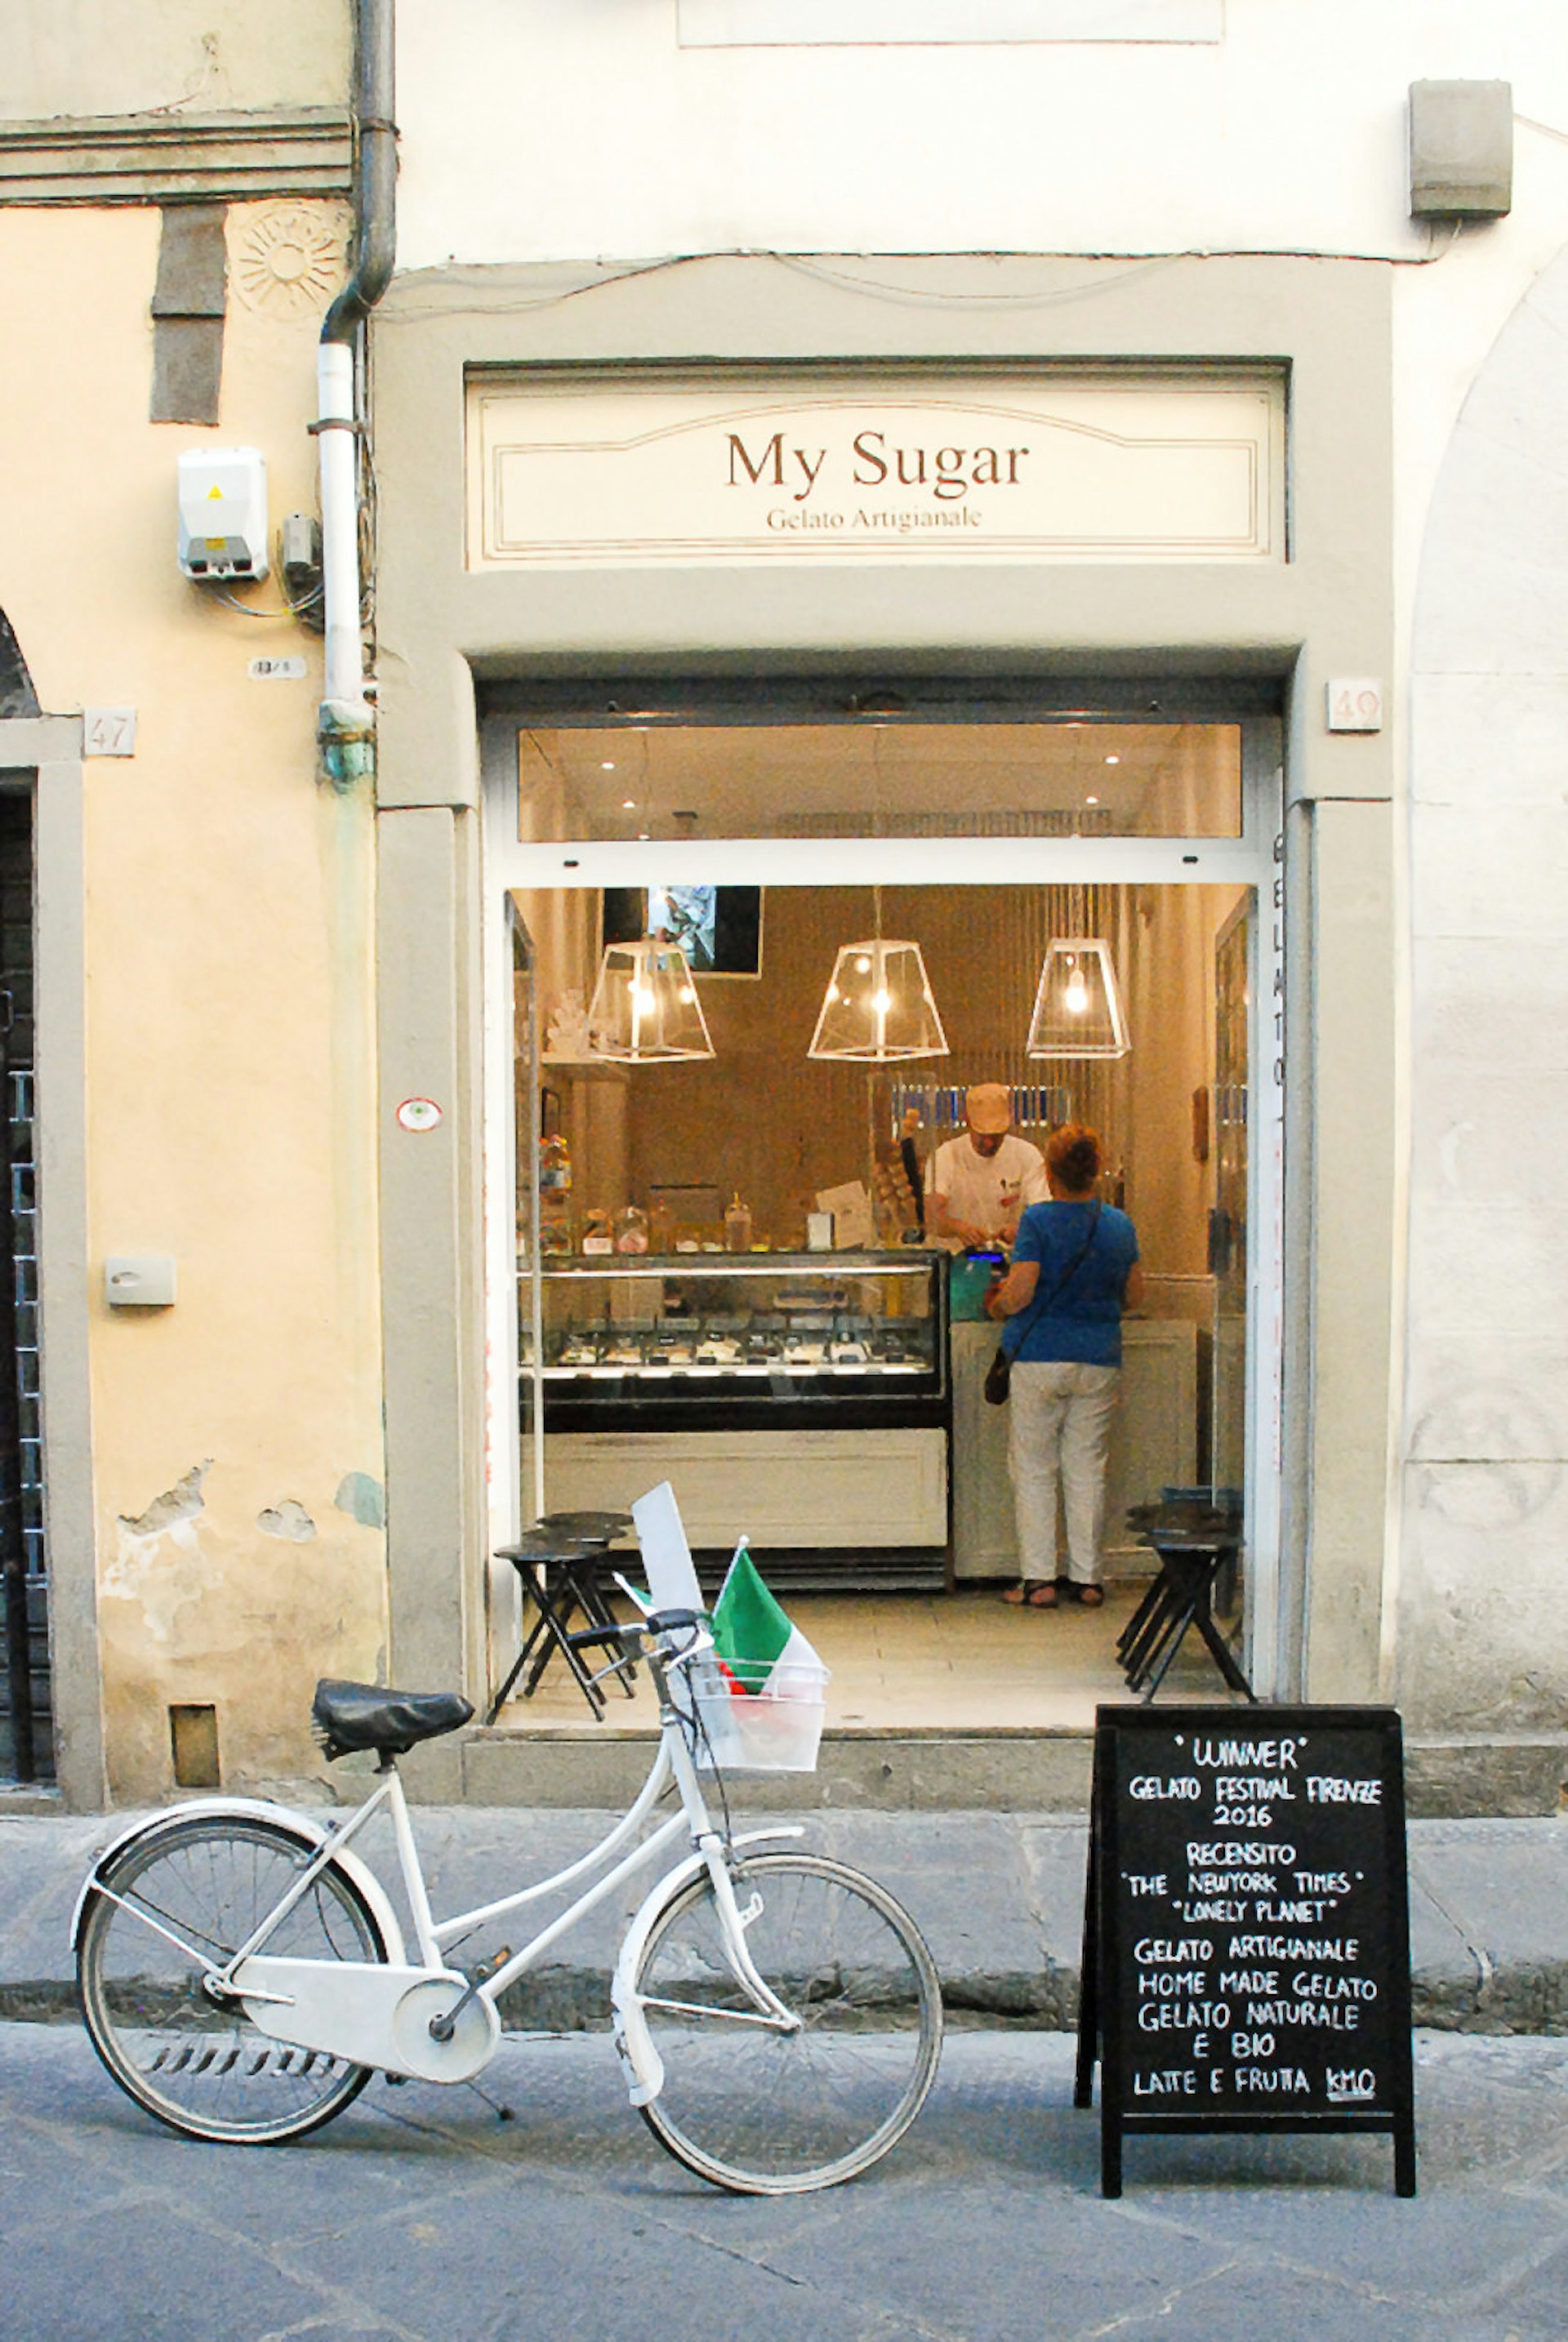 My Sugar, on trendy via de’ Ginori